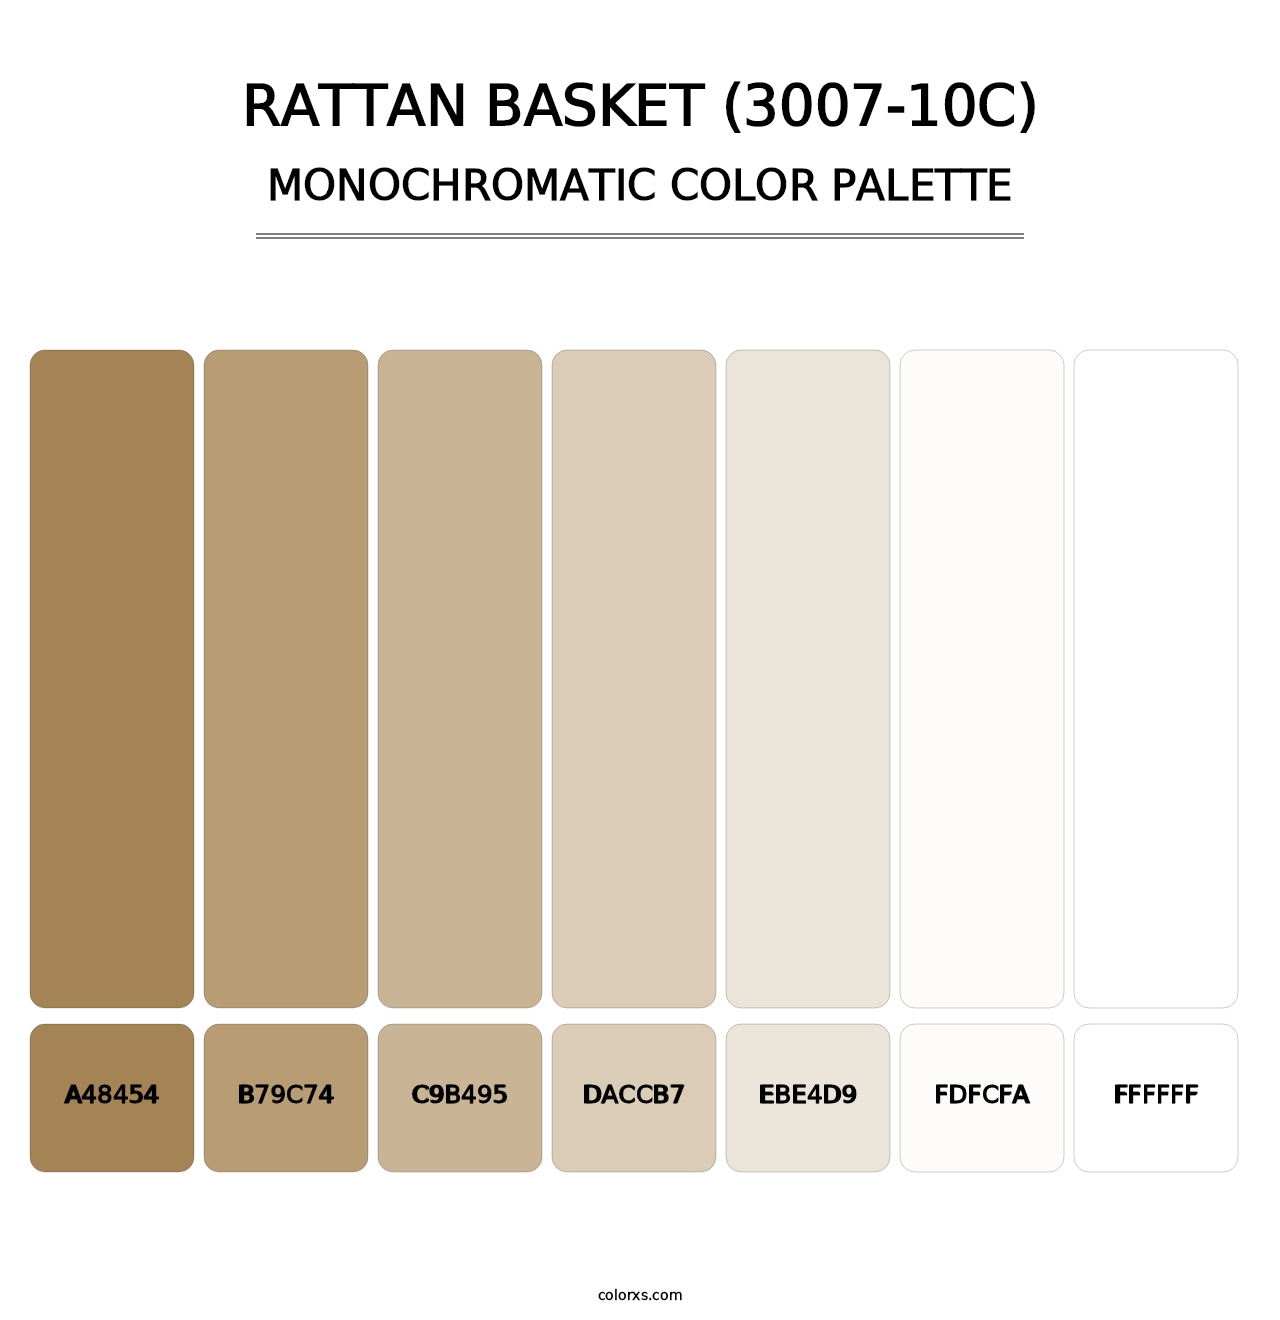 Rattan Basket (3007-10C) - Monochromatic Color Palette